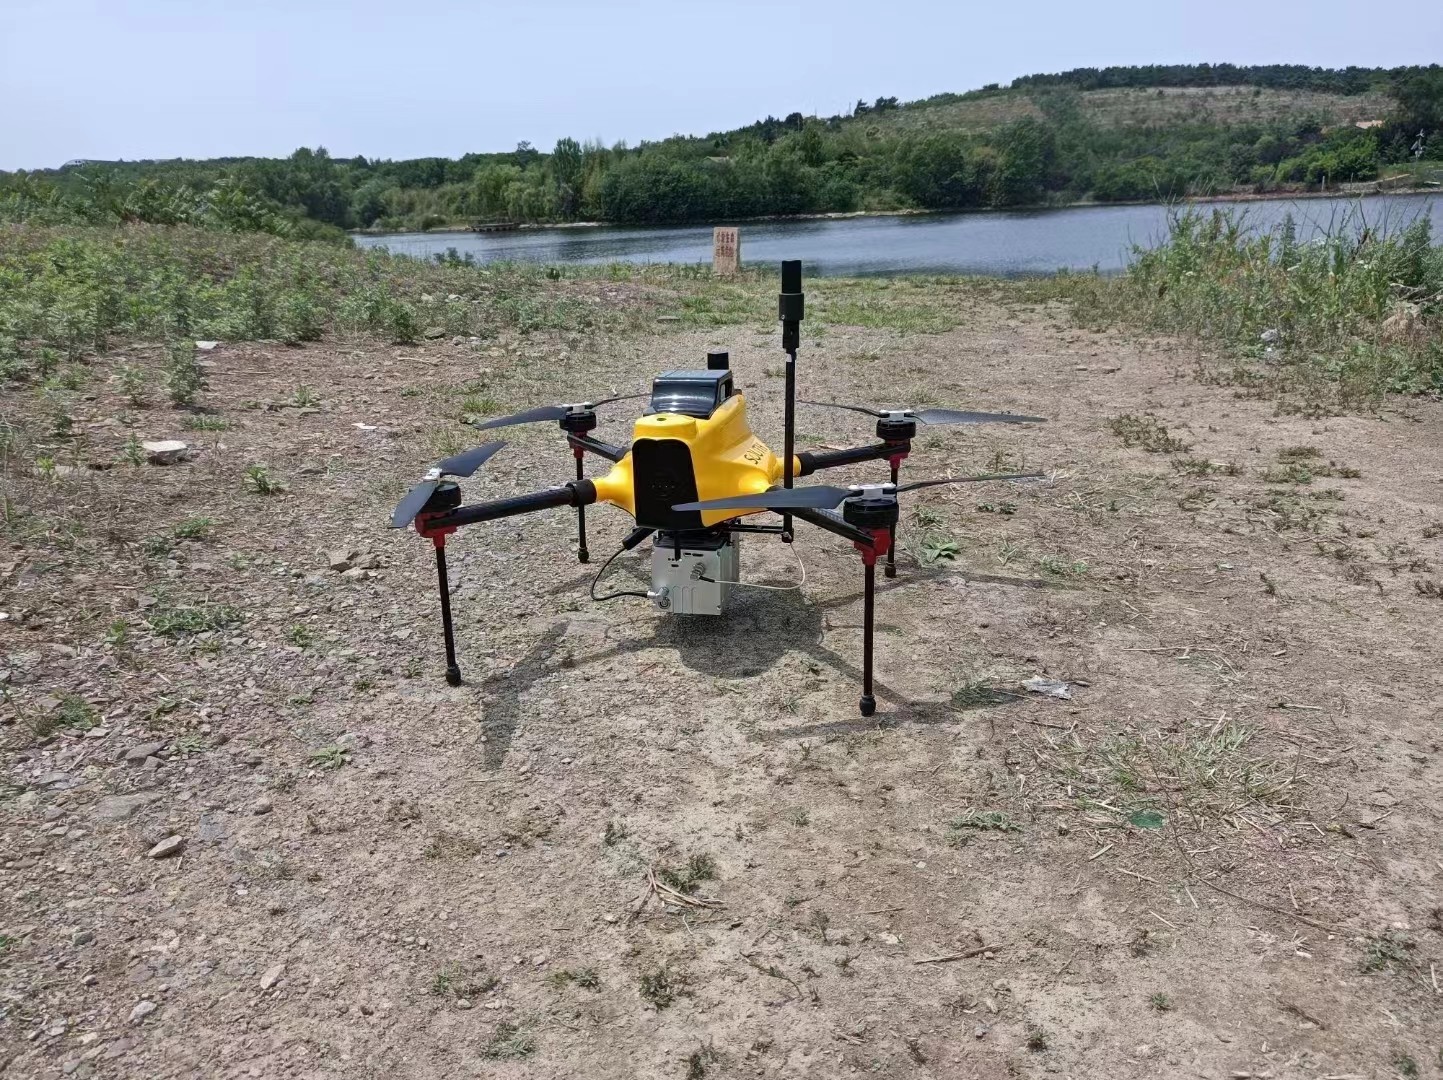 kasus perusahaan terbaru tentang Sistem Pemindaian UAV LiDAR Aplikasi Geosun GS-100C+ untuk Reservoir